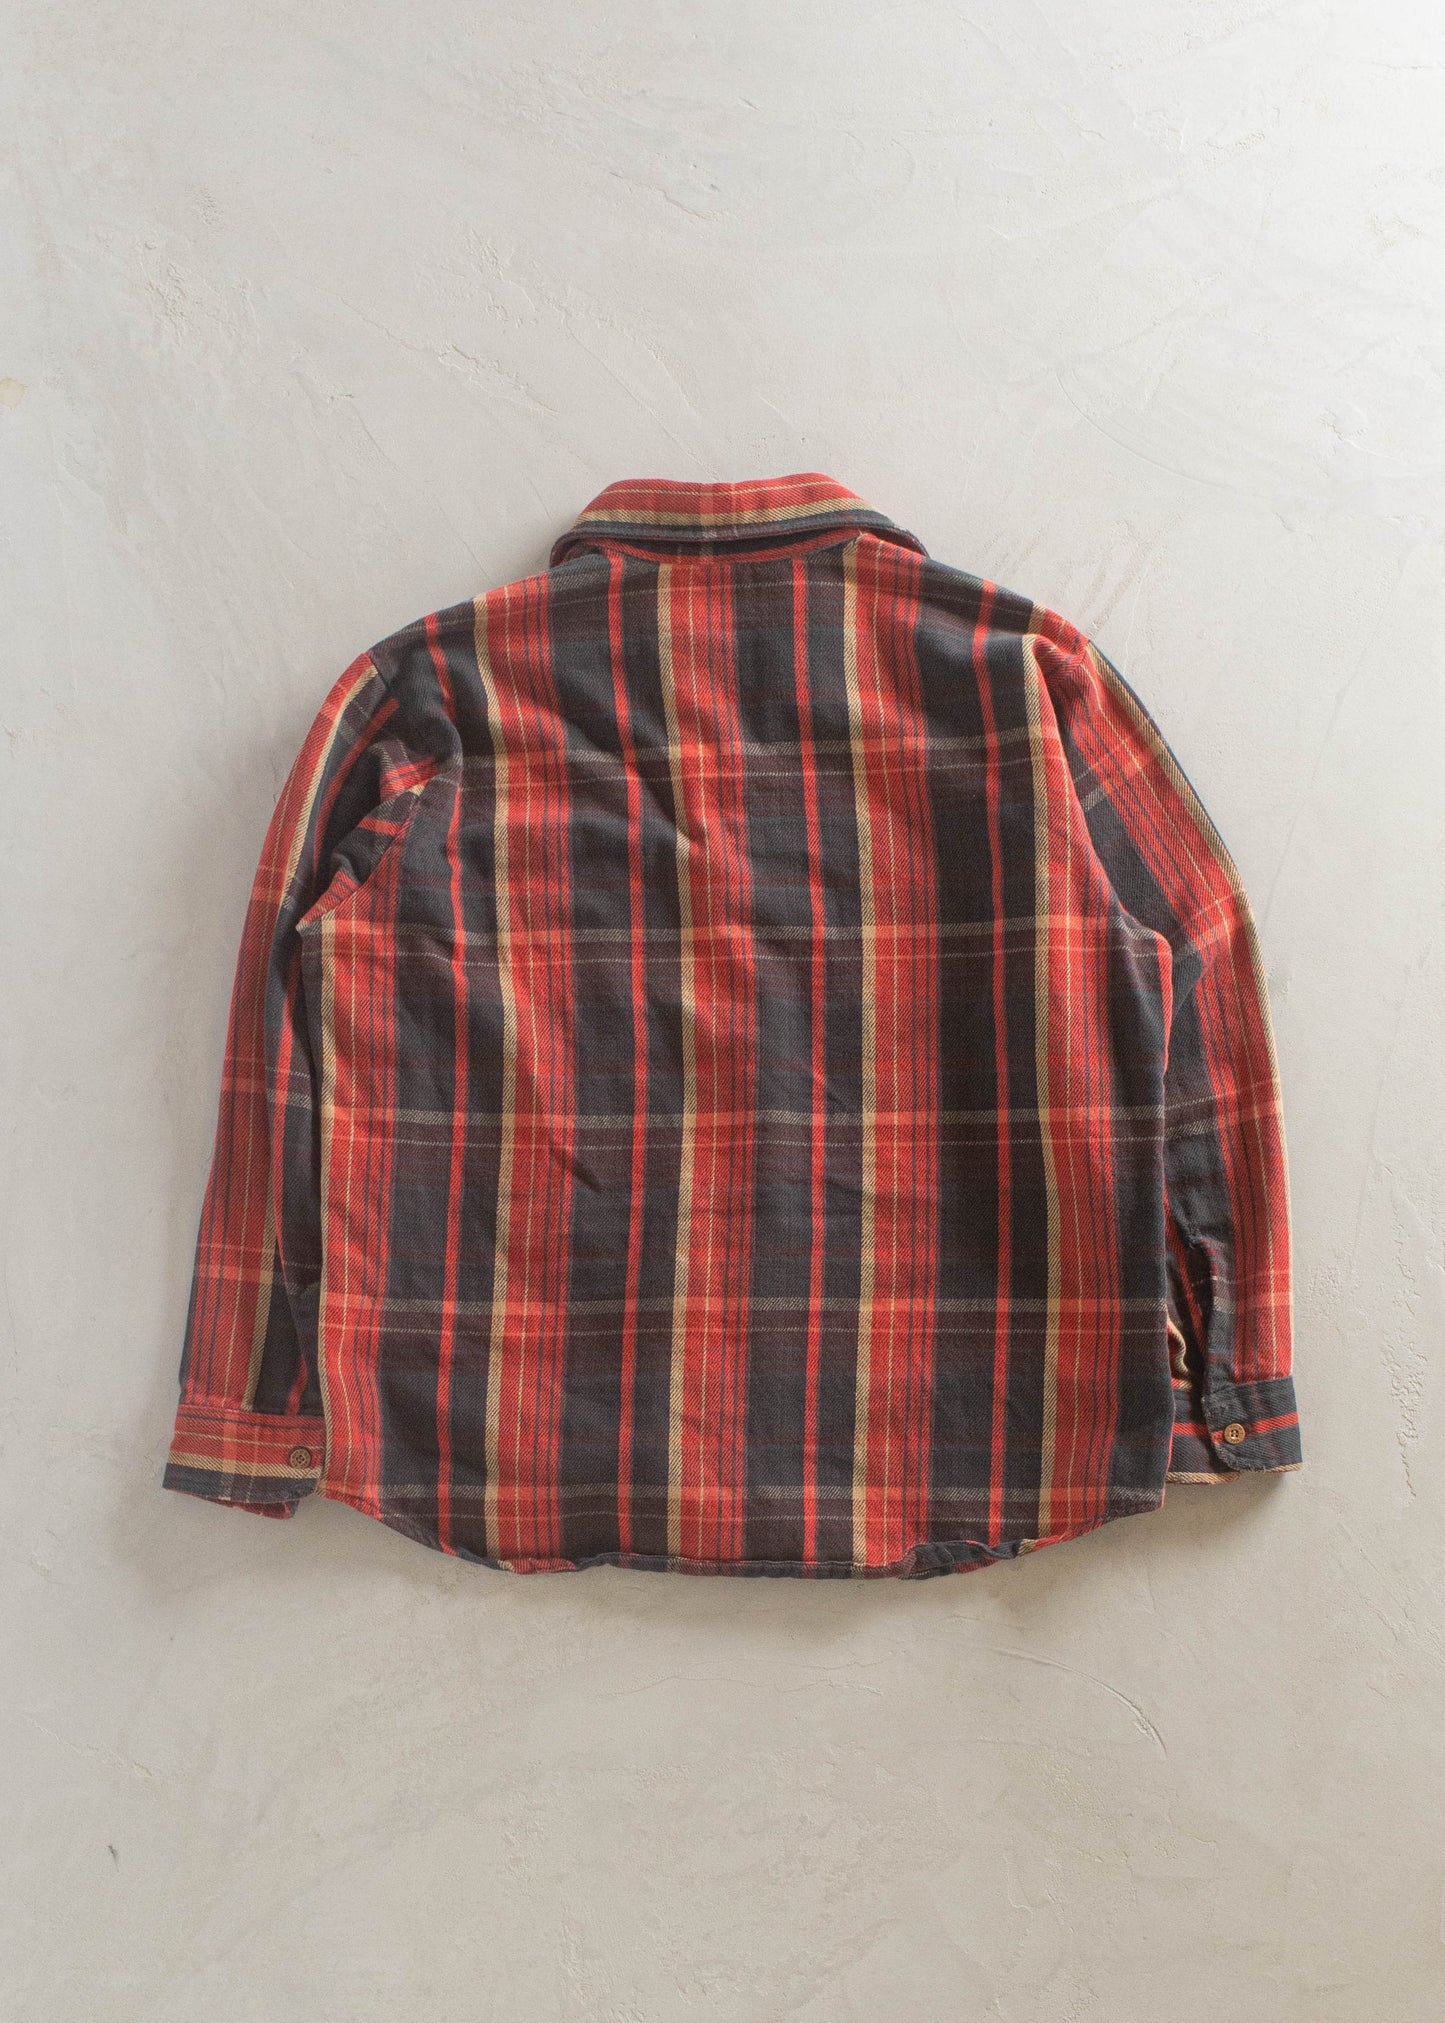 1970s Big Mac Cotton Flannel Button Up Shirt Size M/L